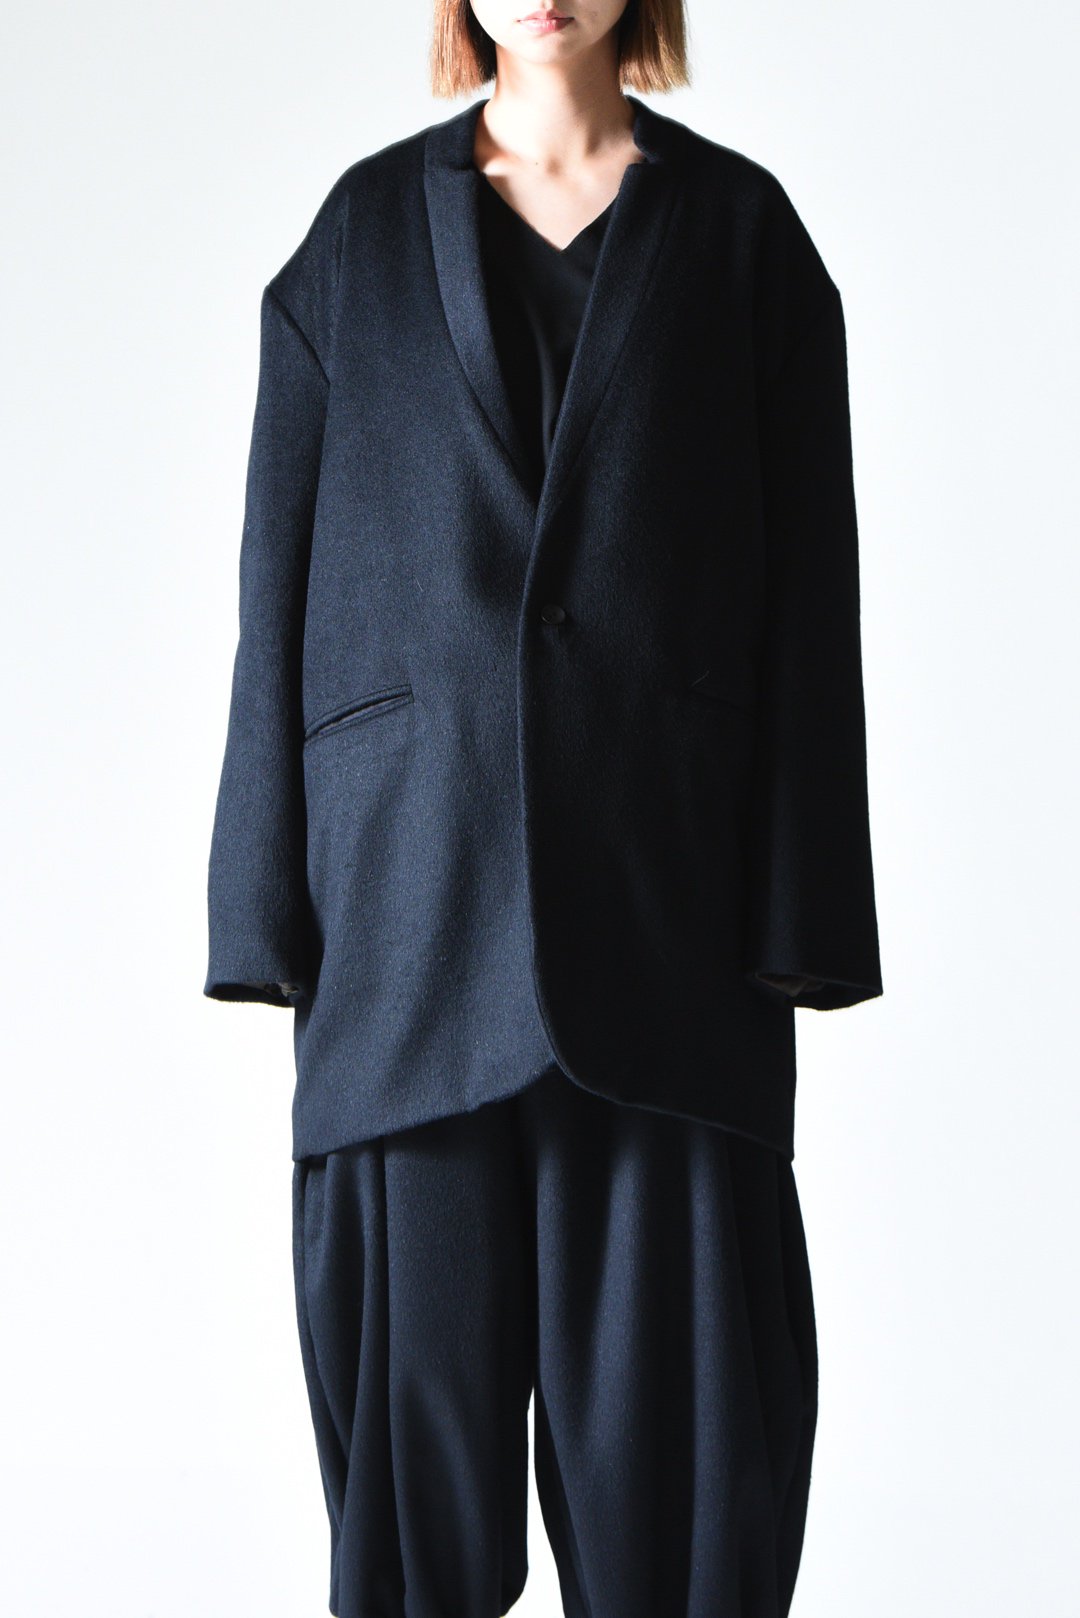 BISHOOL Angora Wool 02 Lapel Long Jacket black - BISHOOL,Edwina 